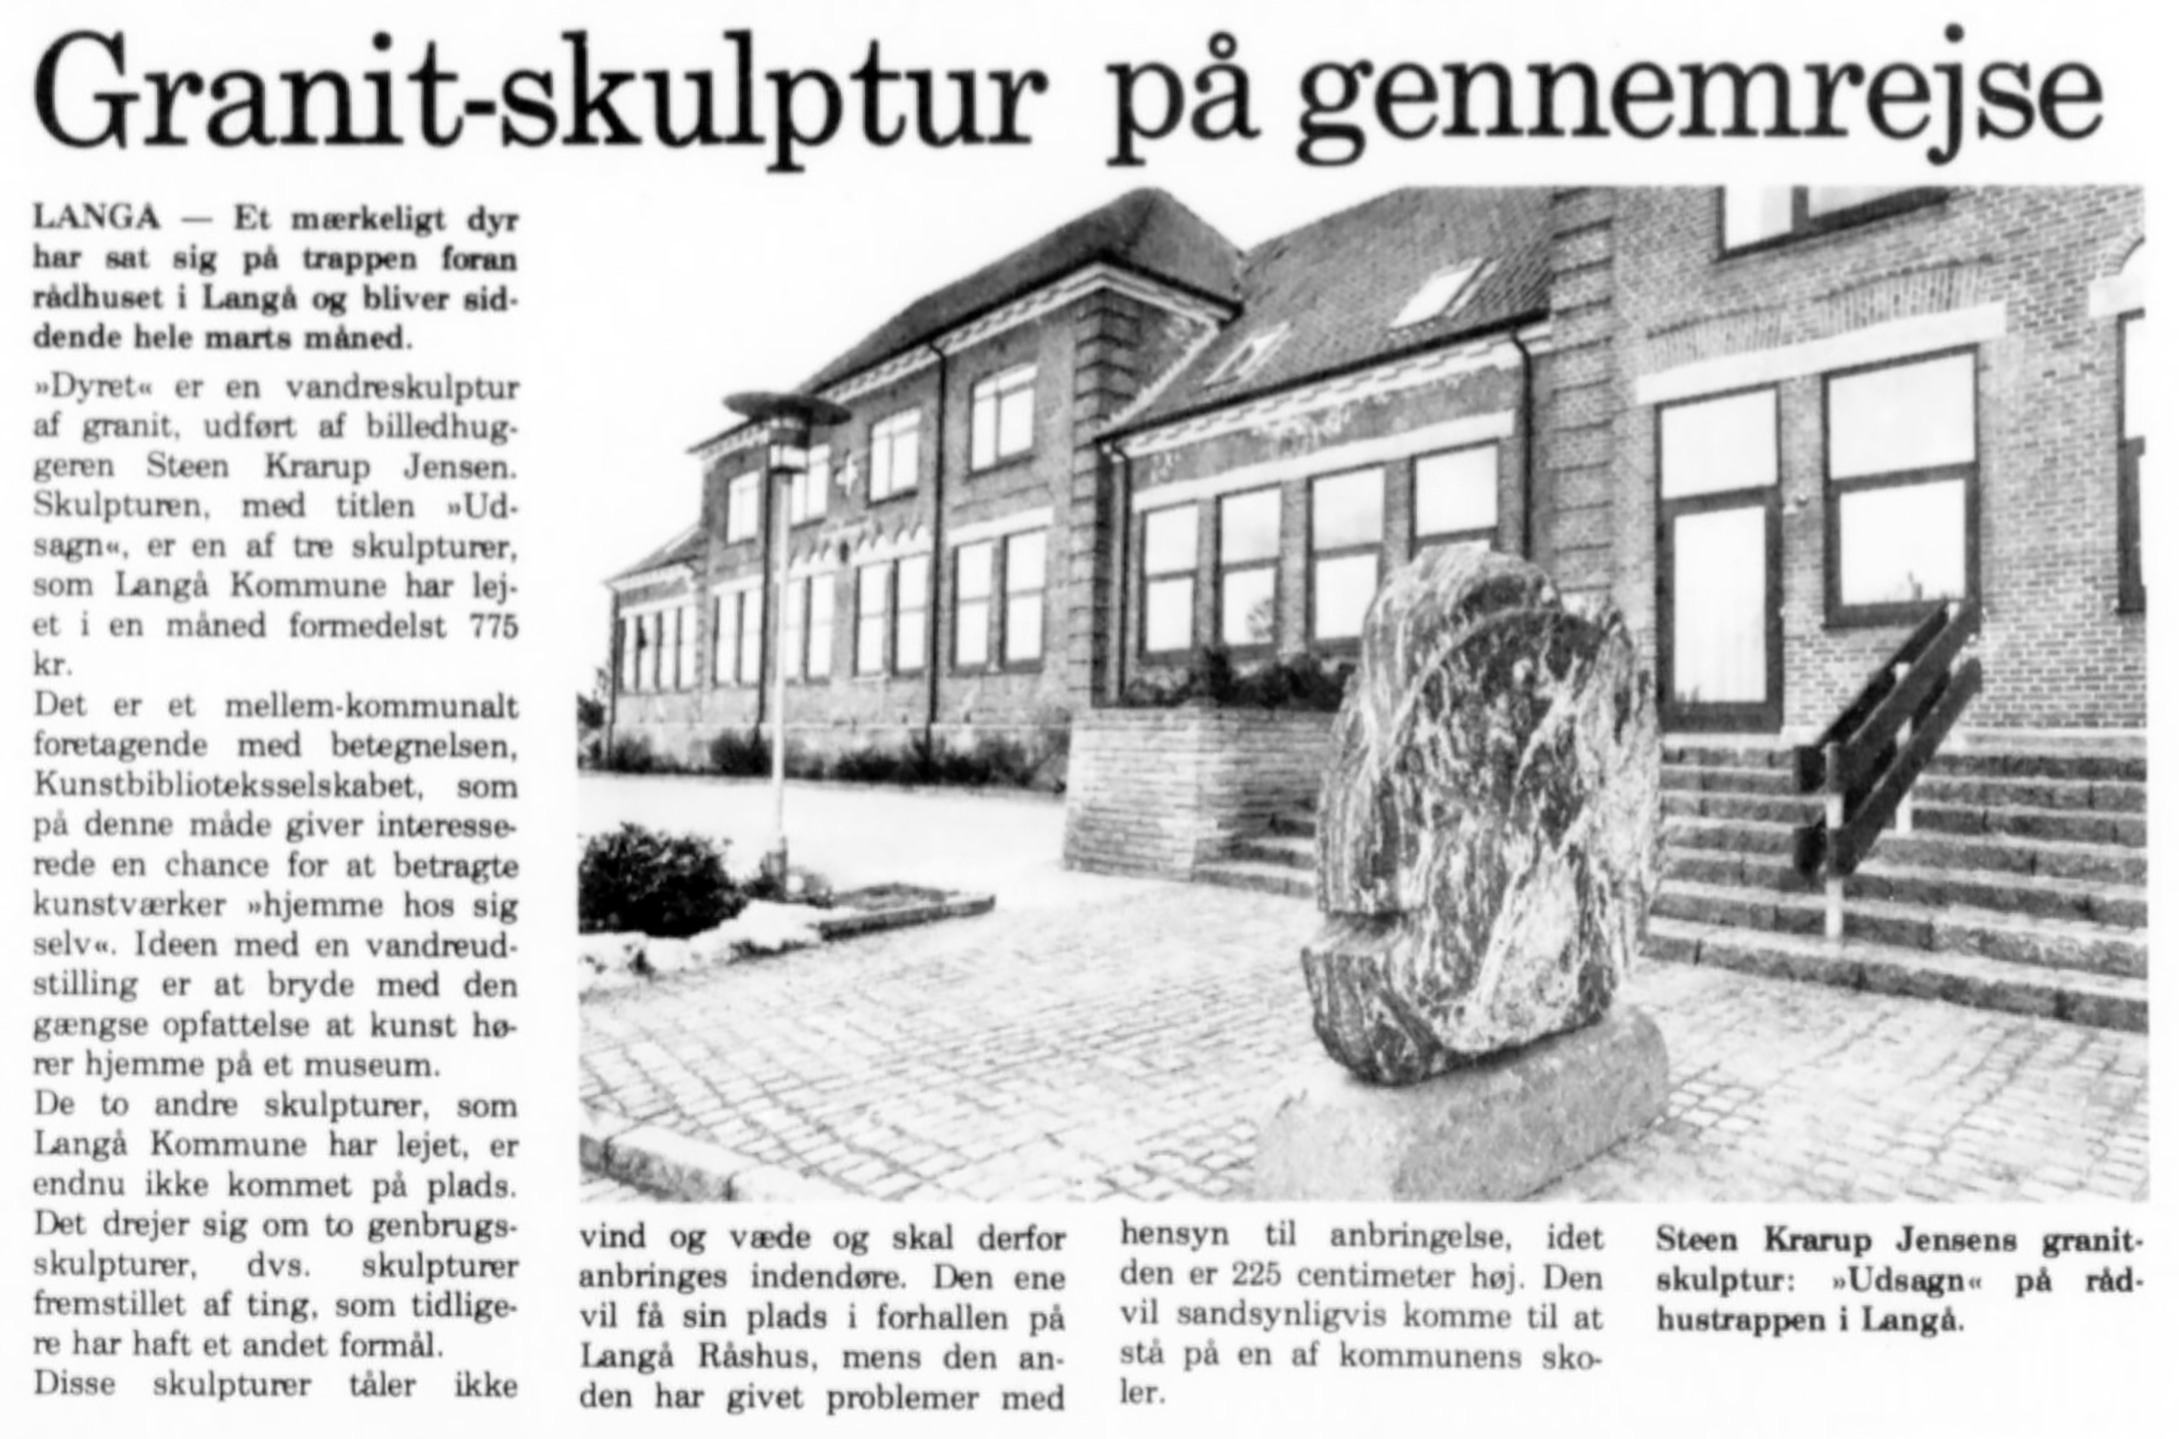 Granitskulptur på gennemrejse. (Skulpturen som blev sprængt året efter.) Djursland.